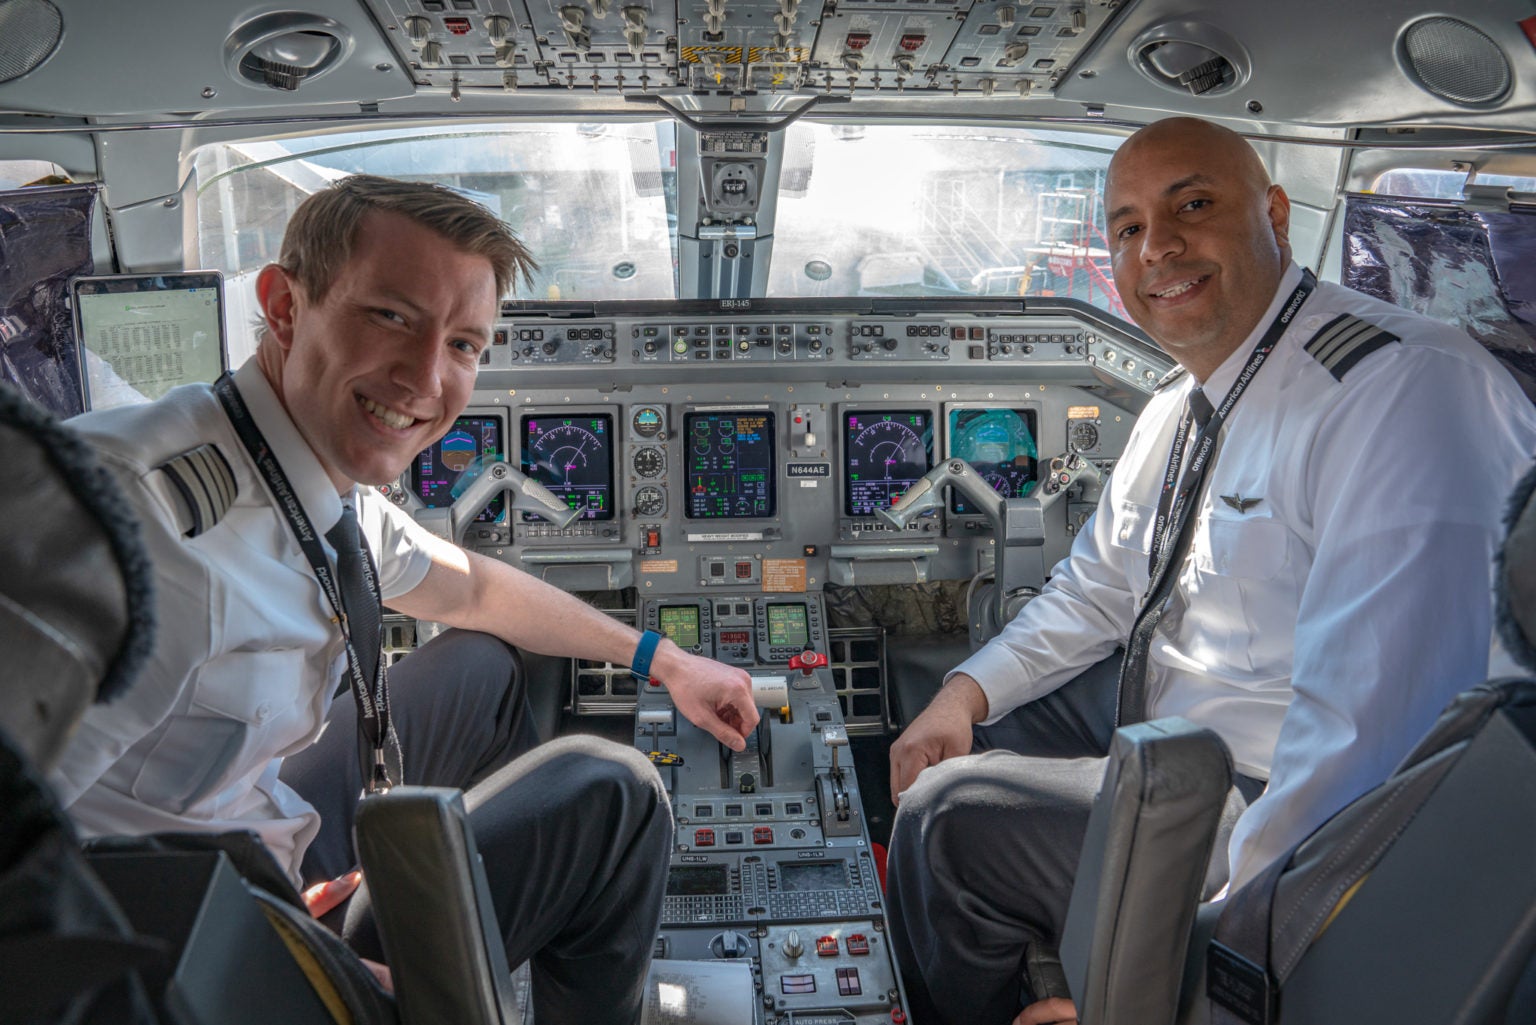 Piedmont Airlines Offers $100K Pilot Bonuses